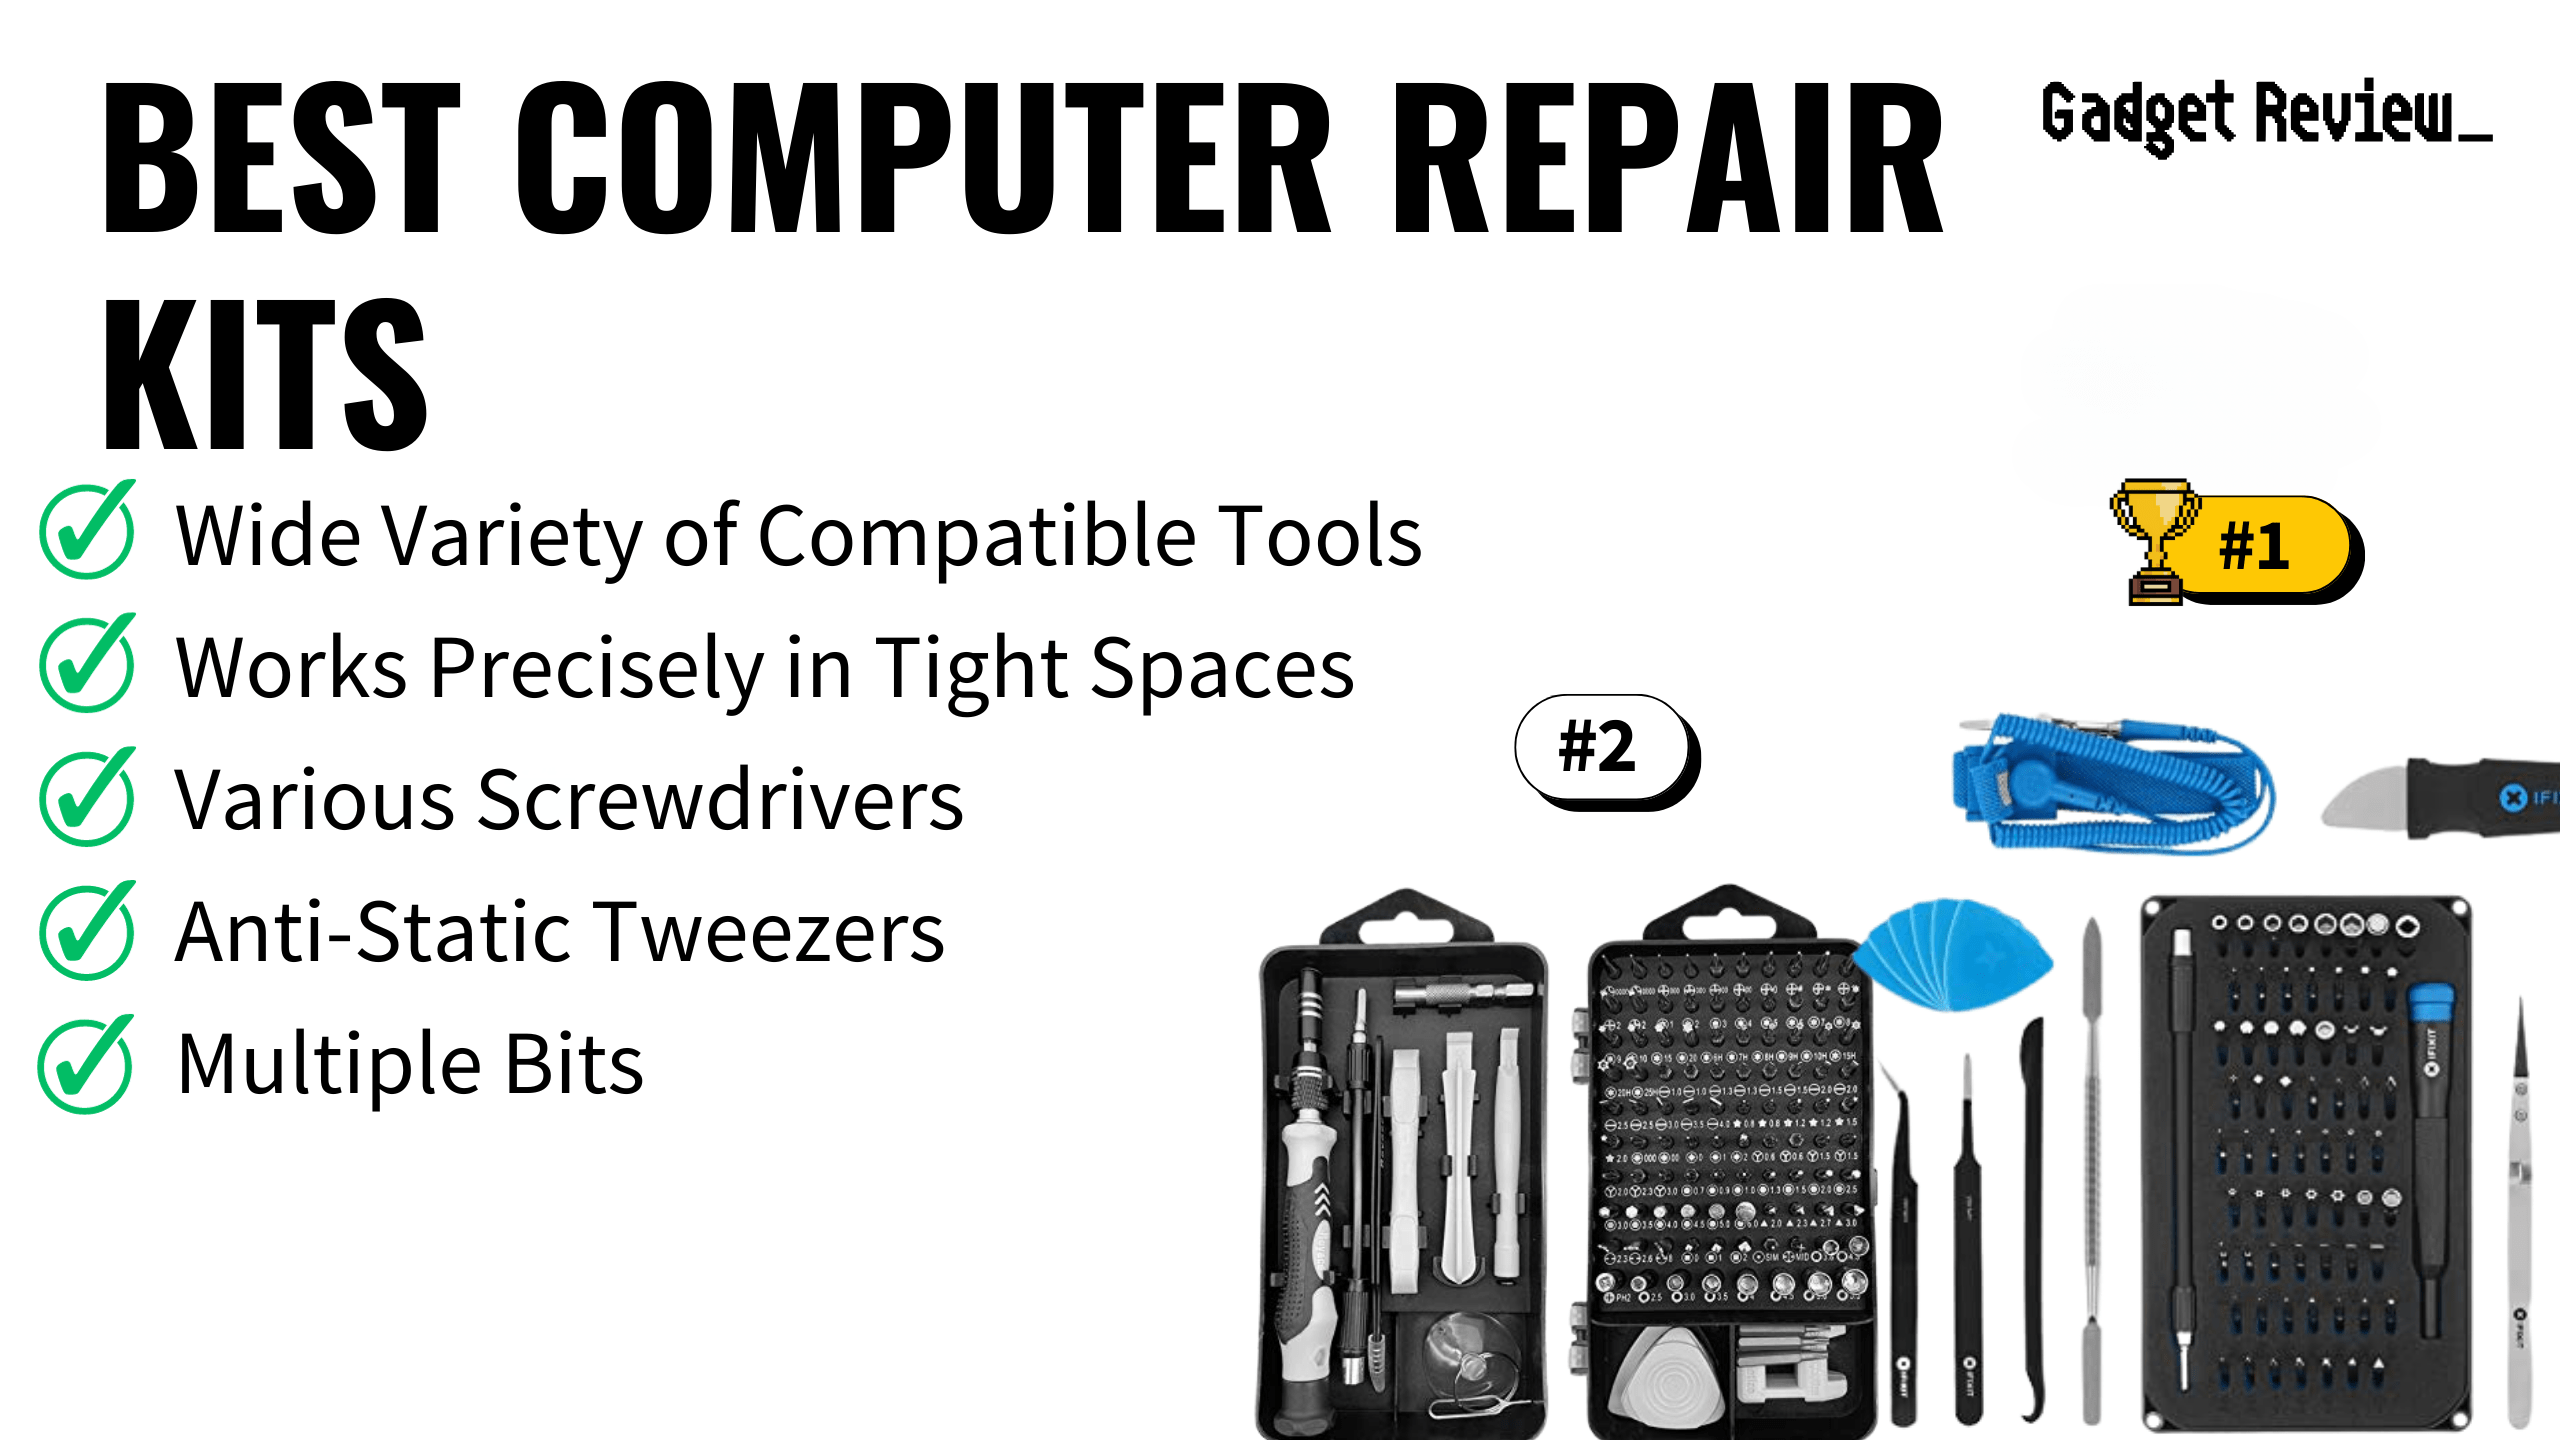 Best Computer Repair Kits